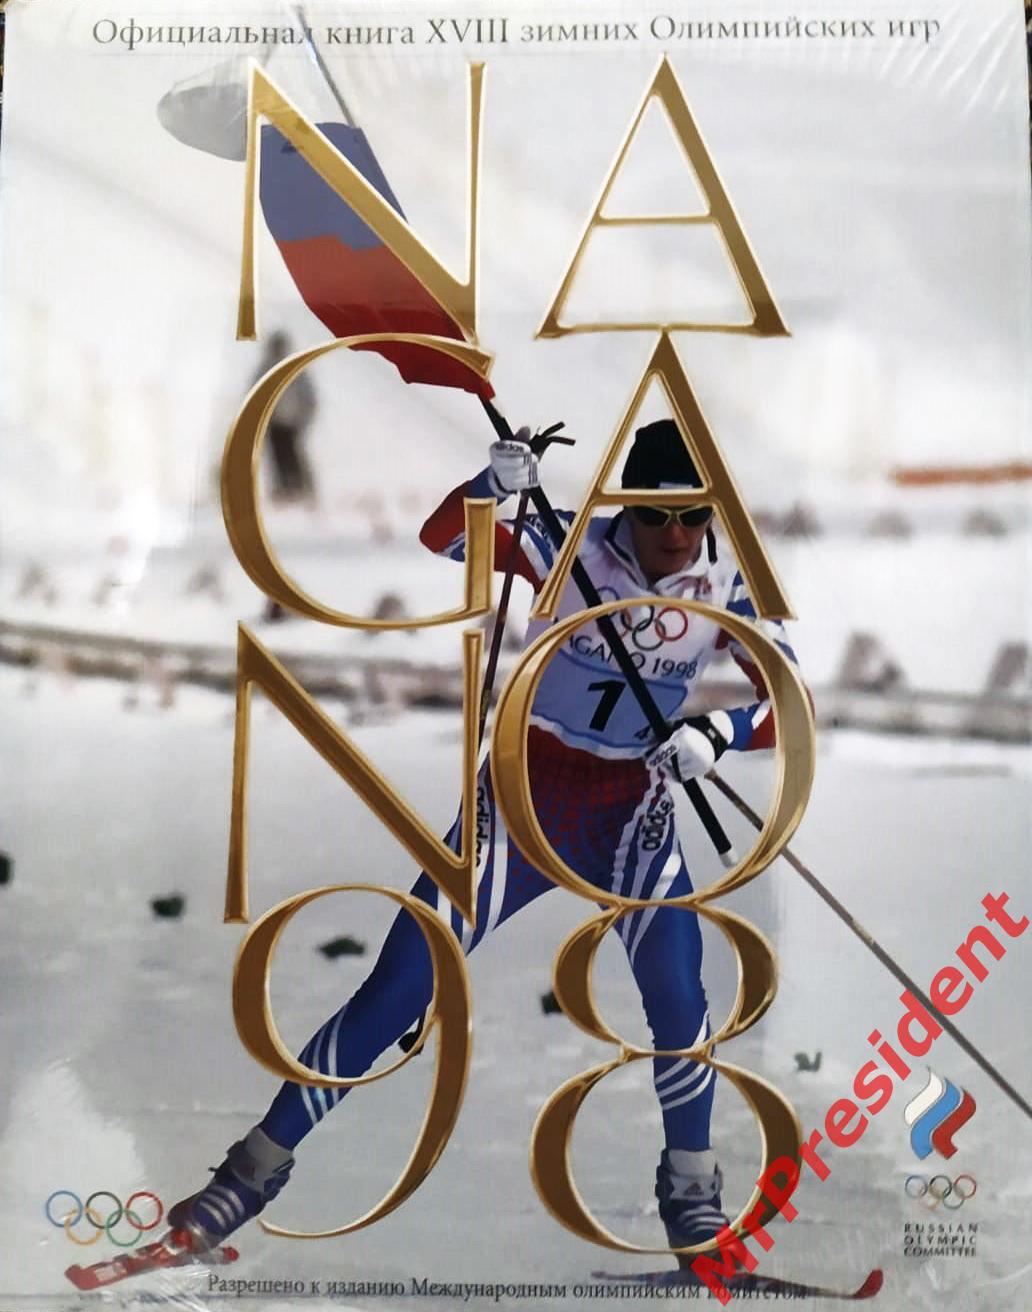 Официальная книга XVIII зимних Олимпийских игр - Нагано, 1998 год.